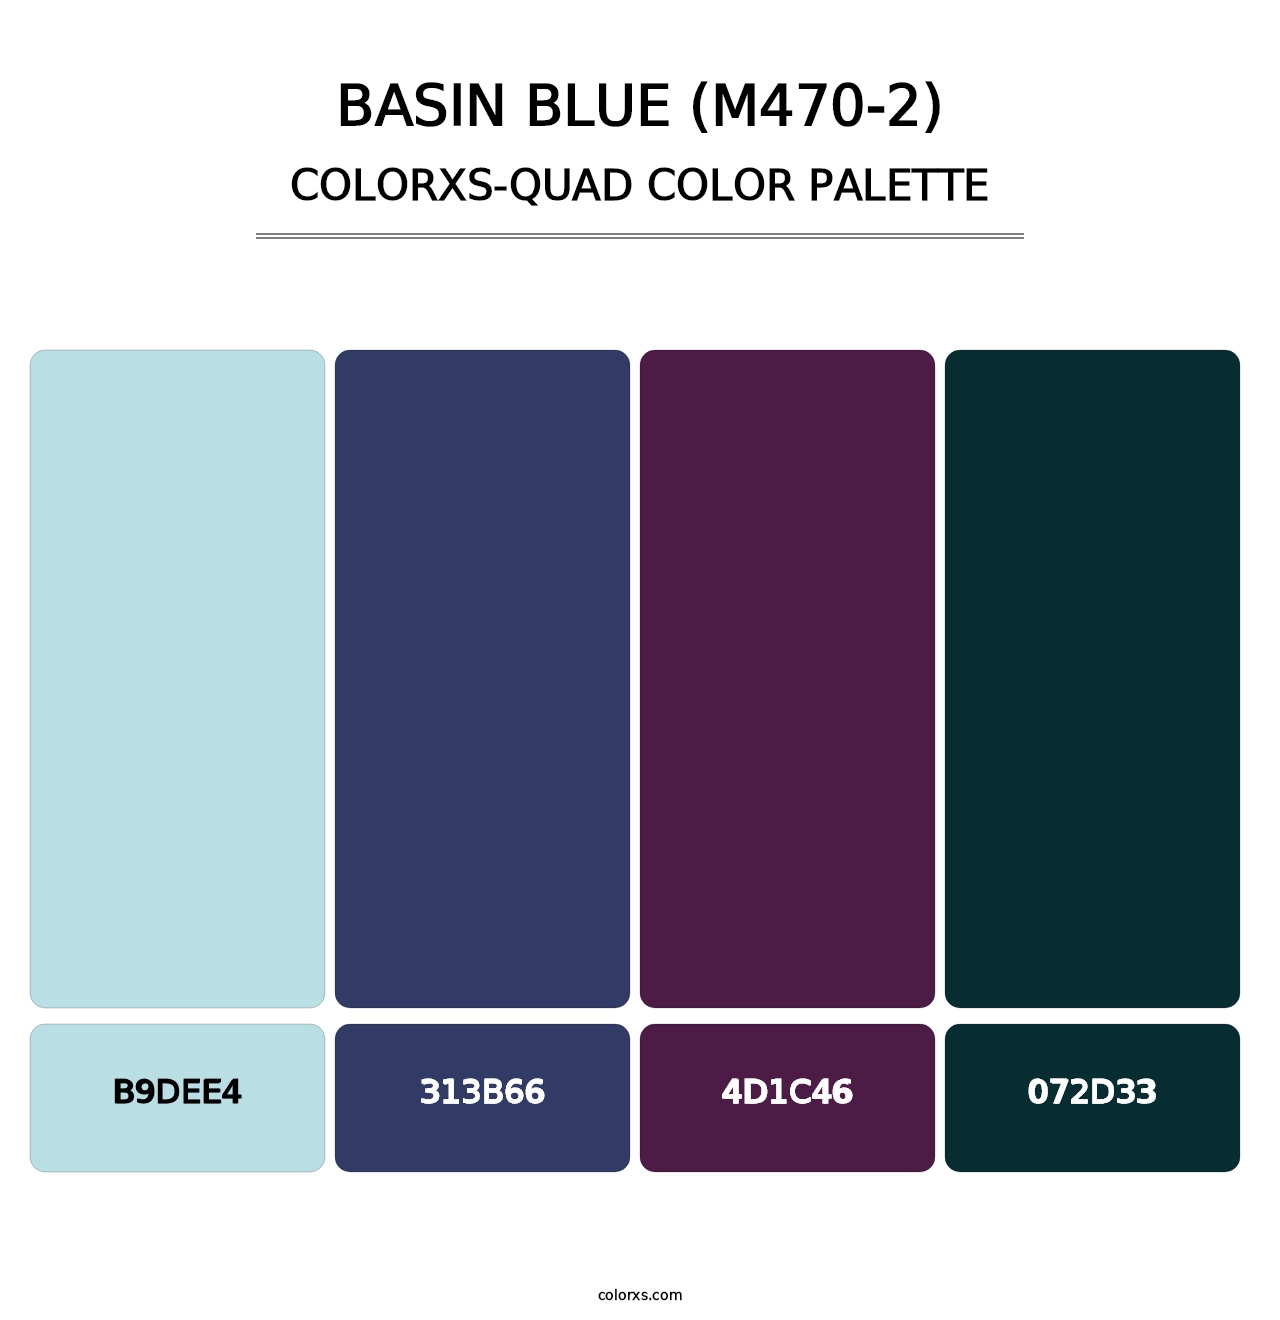 Basin Blue (M470-2) - Colorxs Quad Palette